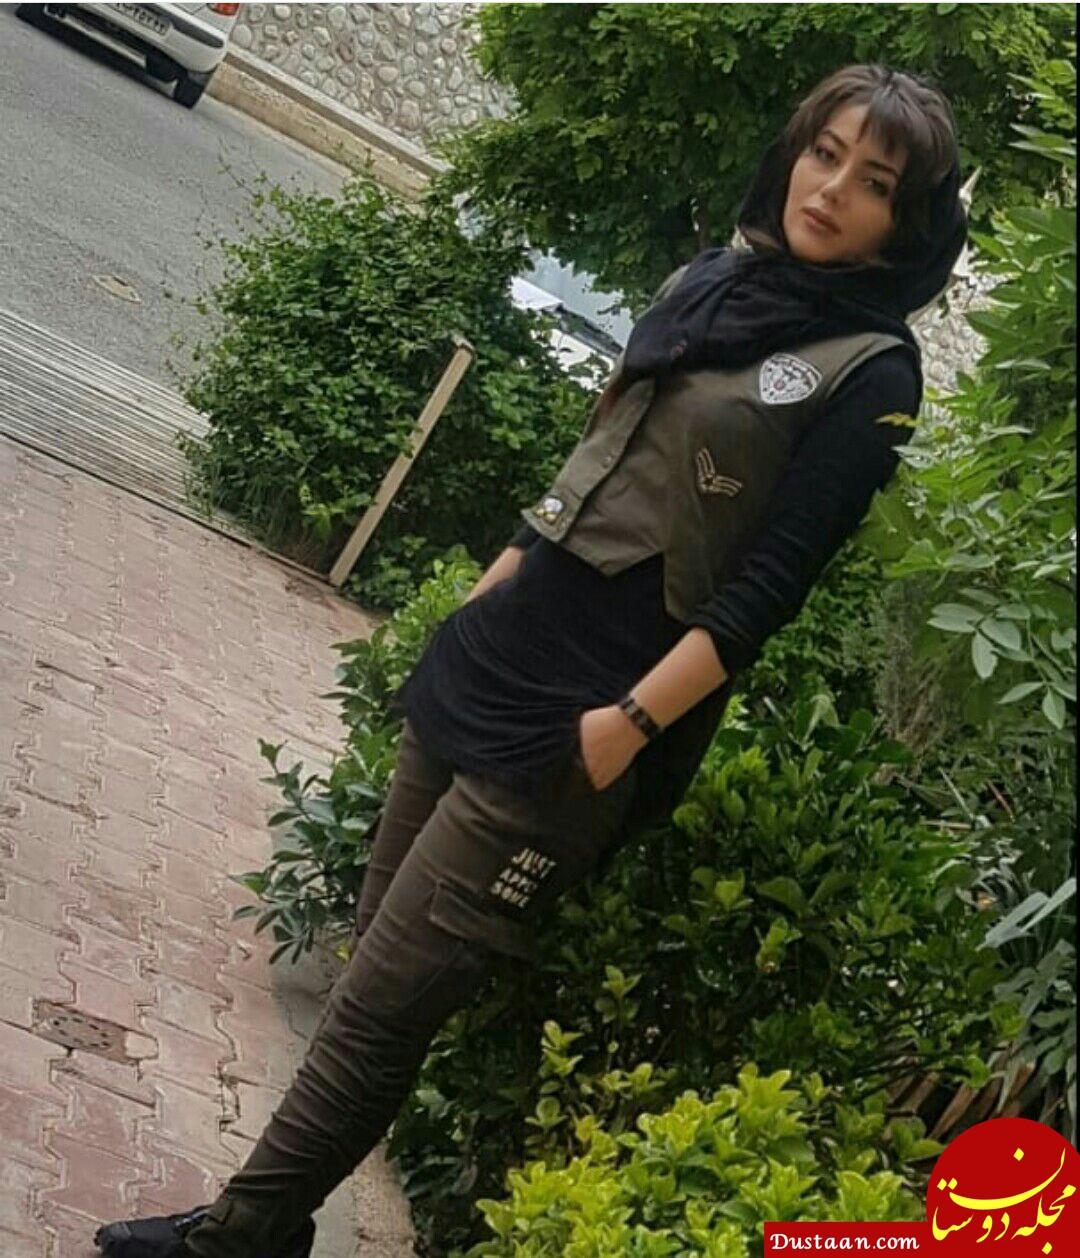 www.dustaan.com - بیوگرافی و عکس های دیدنی هدیه بازوند ،بازیگر نقش روژان در سریال نون خ